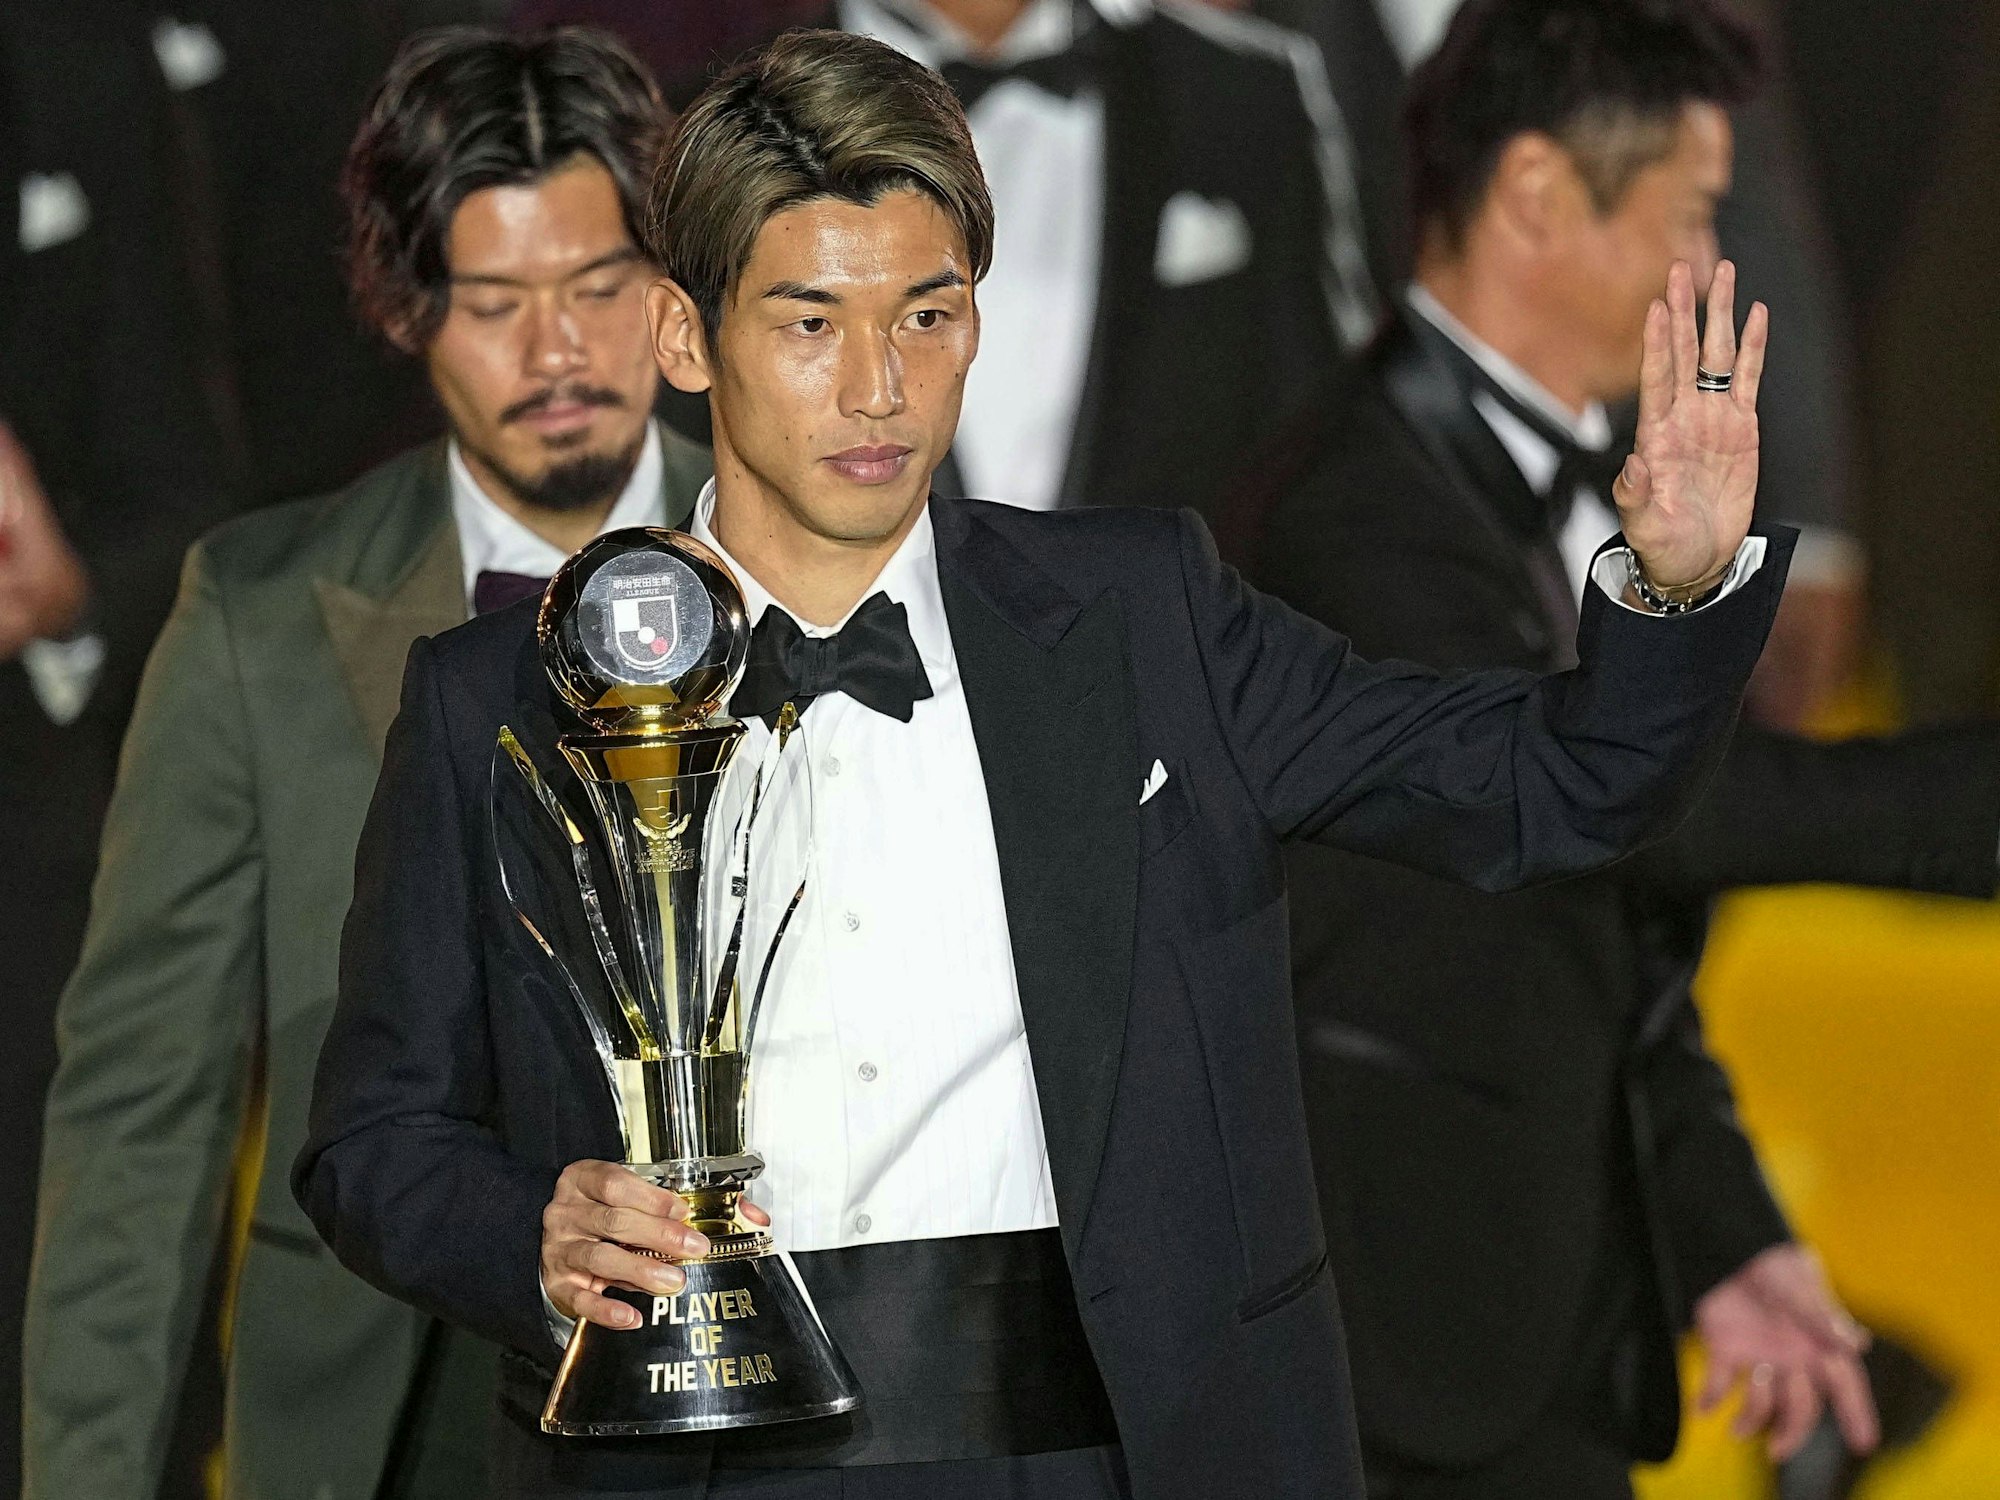 Yuya Osako grüßt im Smoking mit der Trophäe für den Spieler des Jahres im Arm.